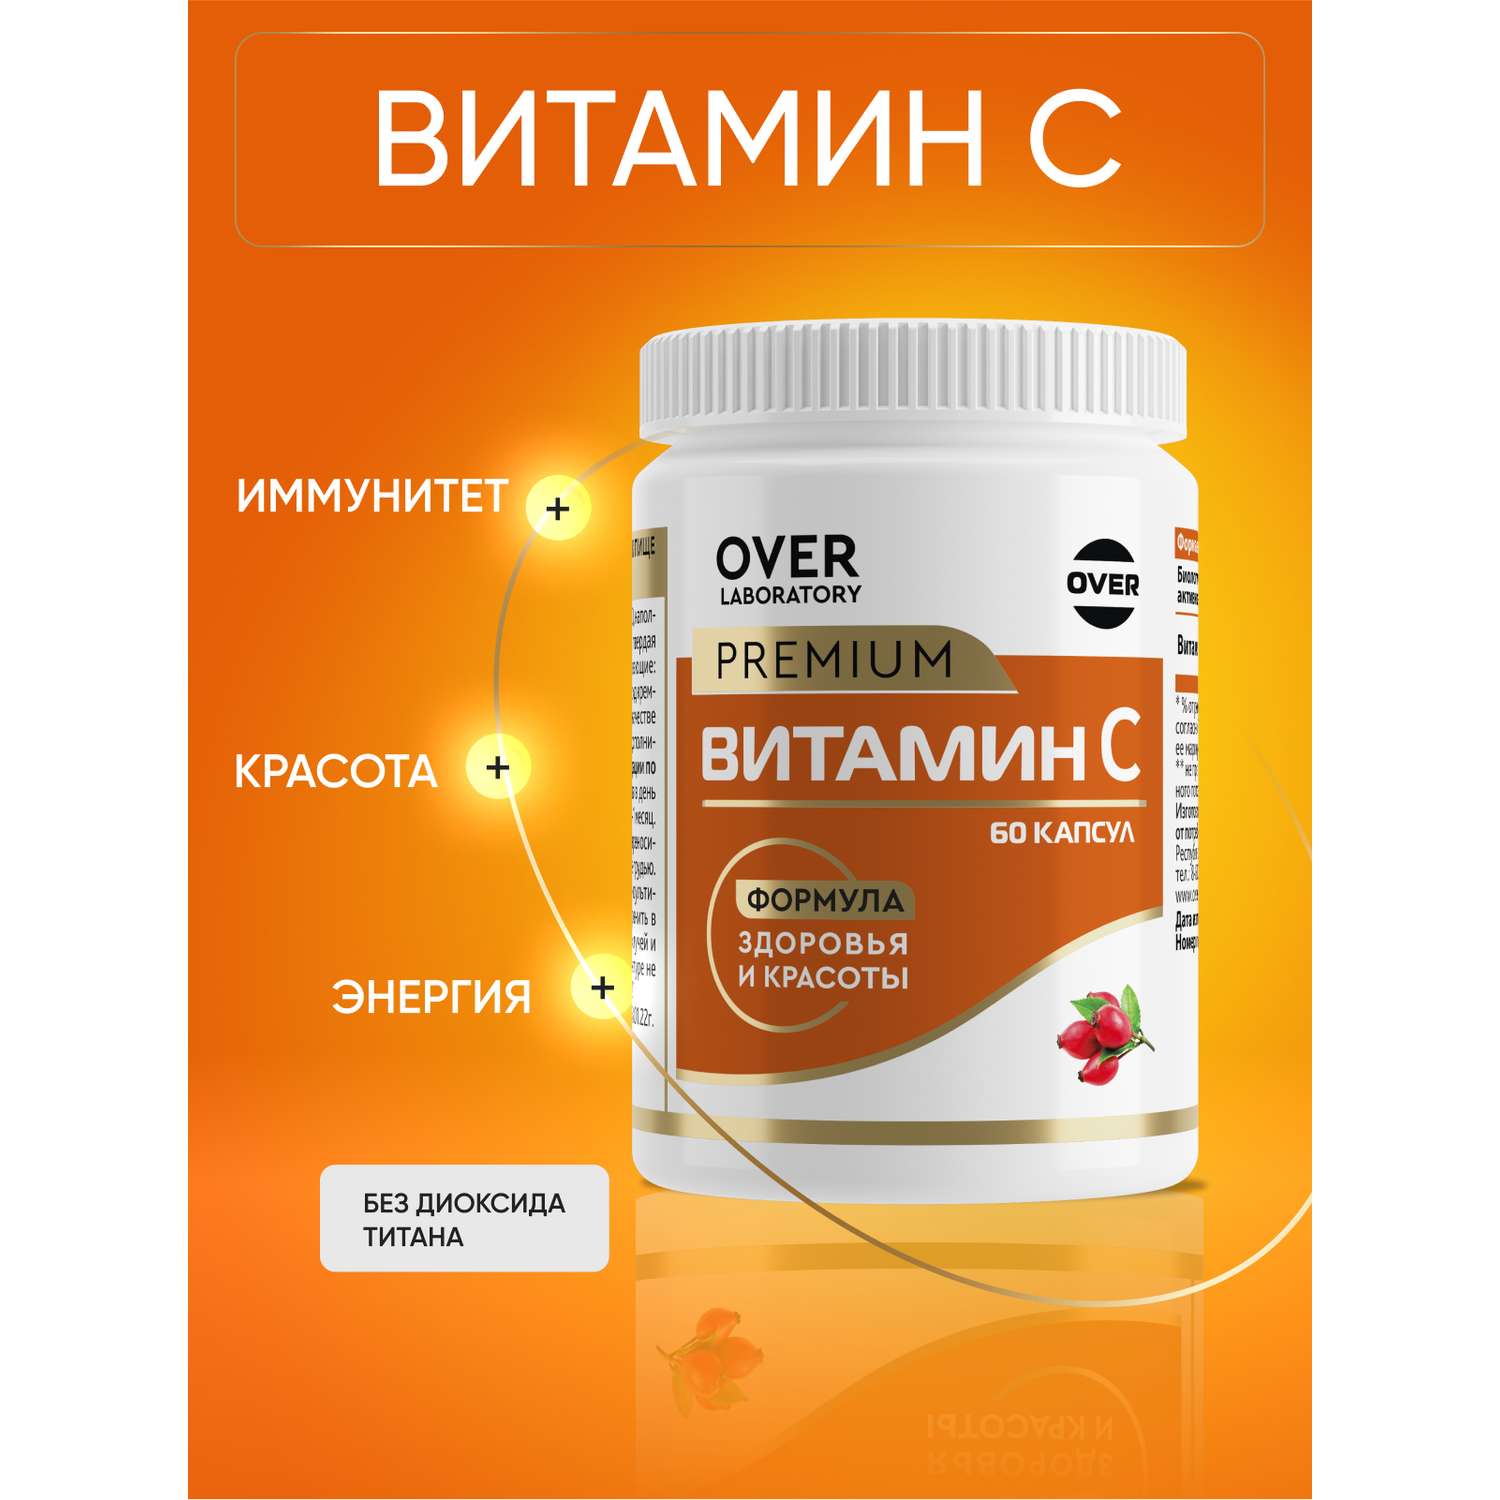 Витамин С (аскорбинка) OVER БАД для поддержания иммунитета 60 капсул - фото 1